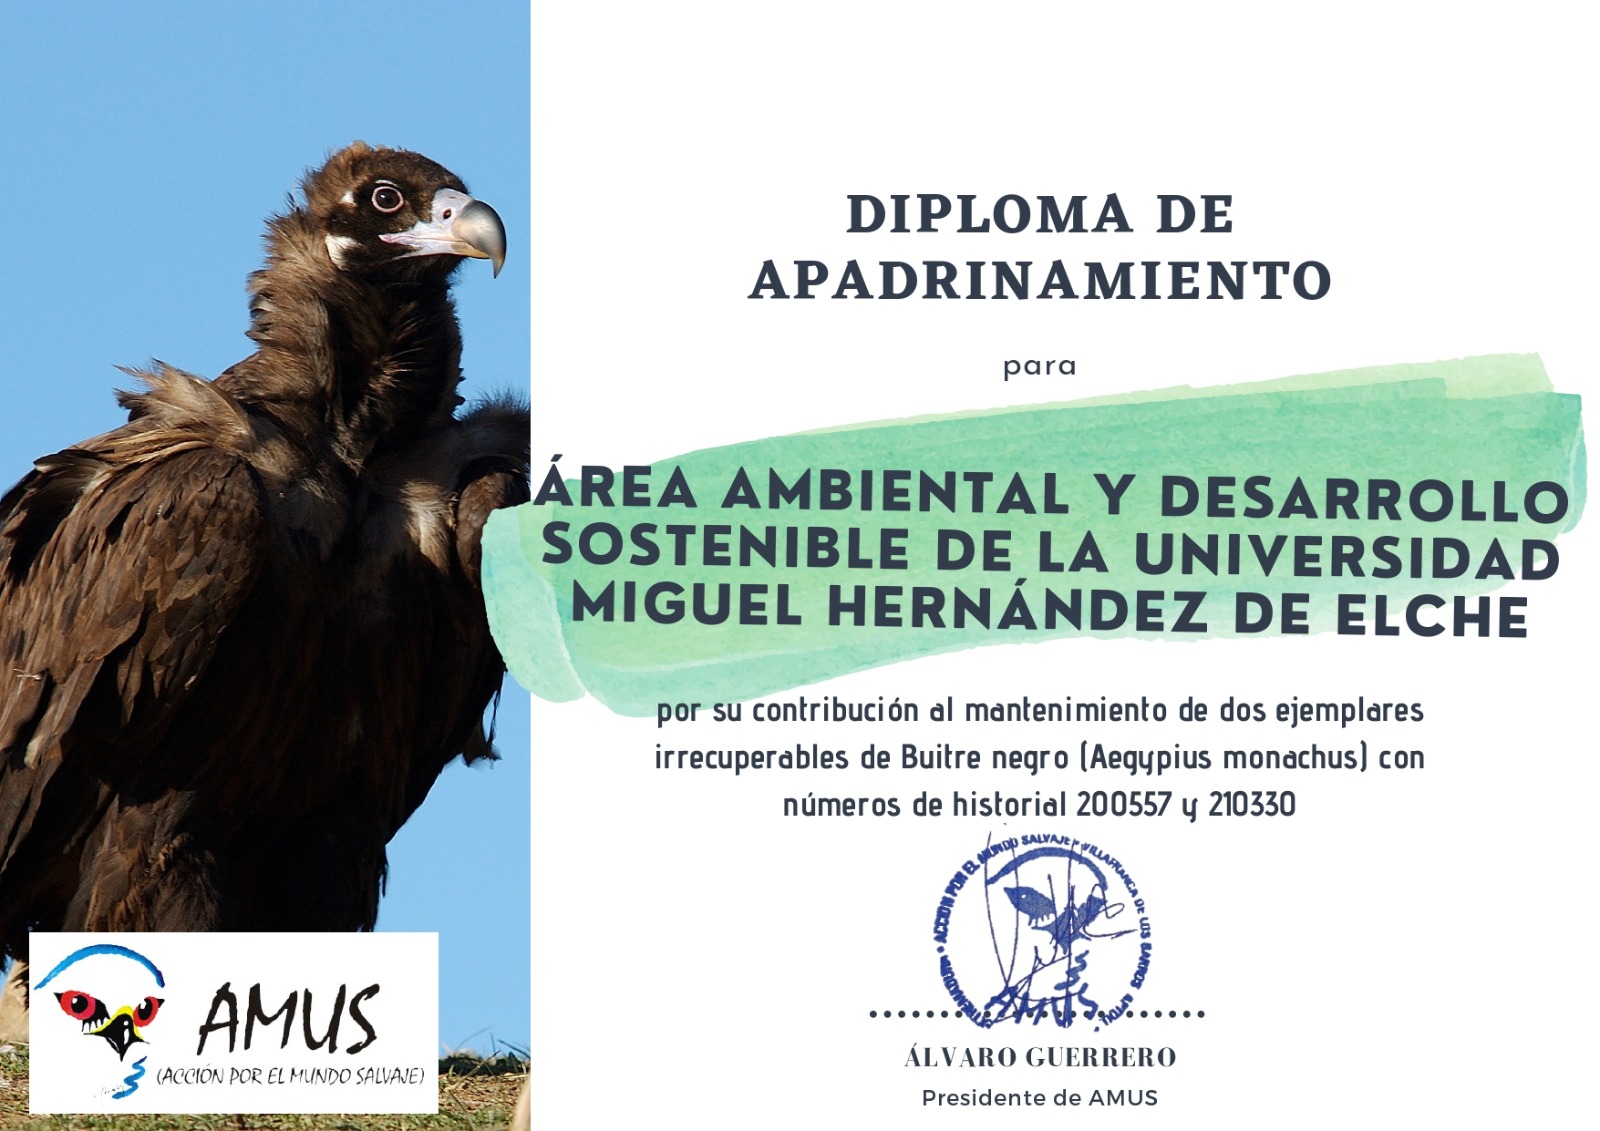 La comunidad universitaria de la UMH colabora, a través del Área Ambiental y Desarrollo Sostenible, en la protección de la fauna silvestre irrecuperable